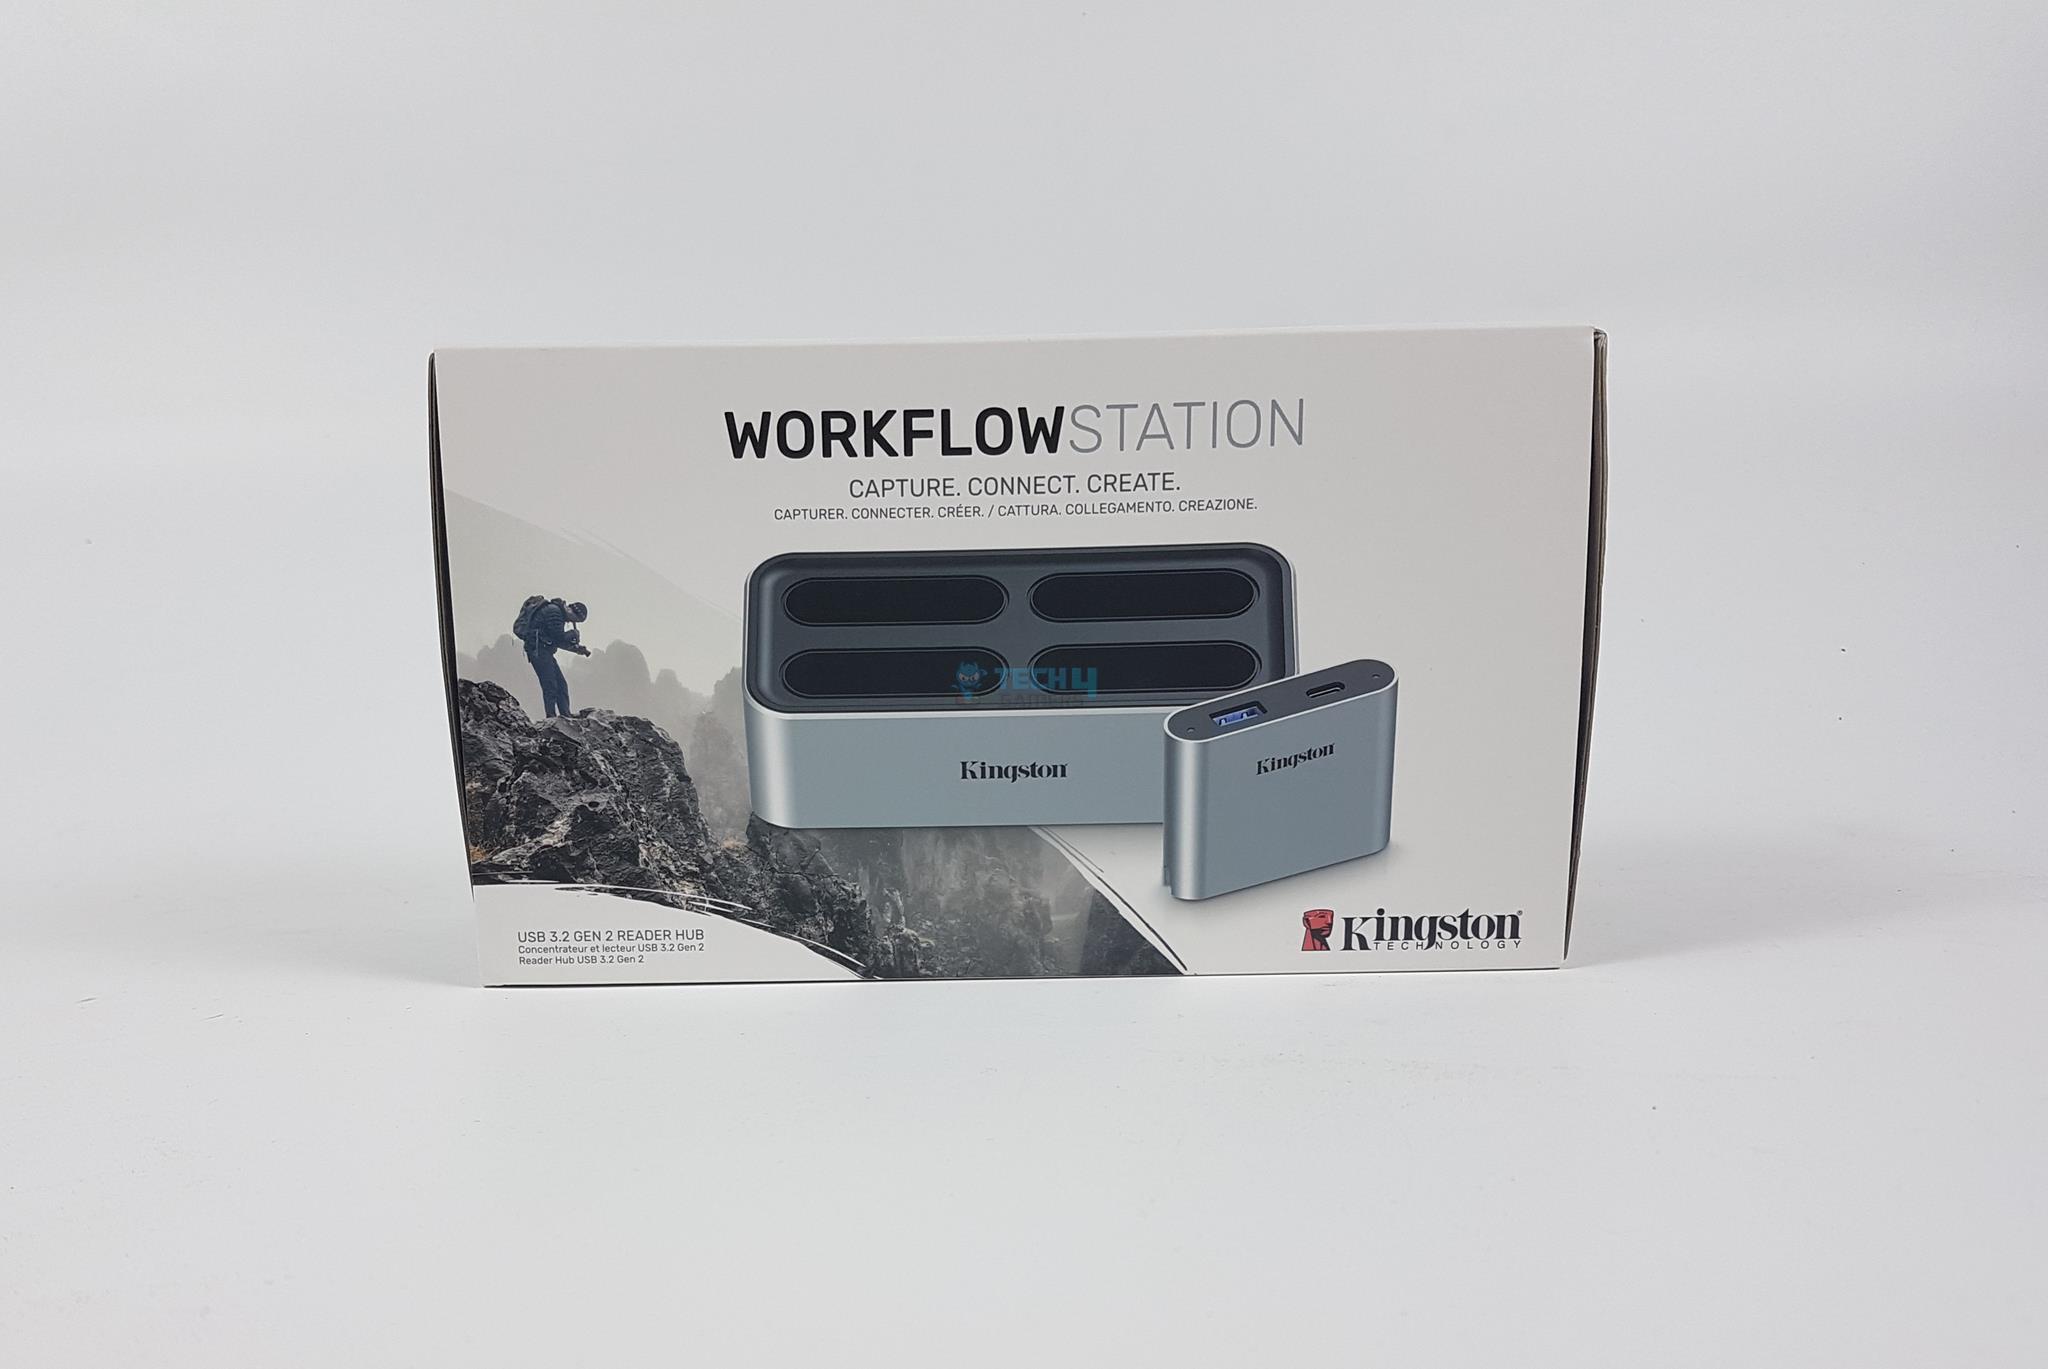 Kingston Workflow Station — Packing Box 1